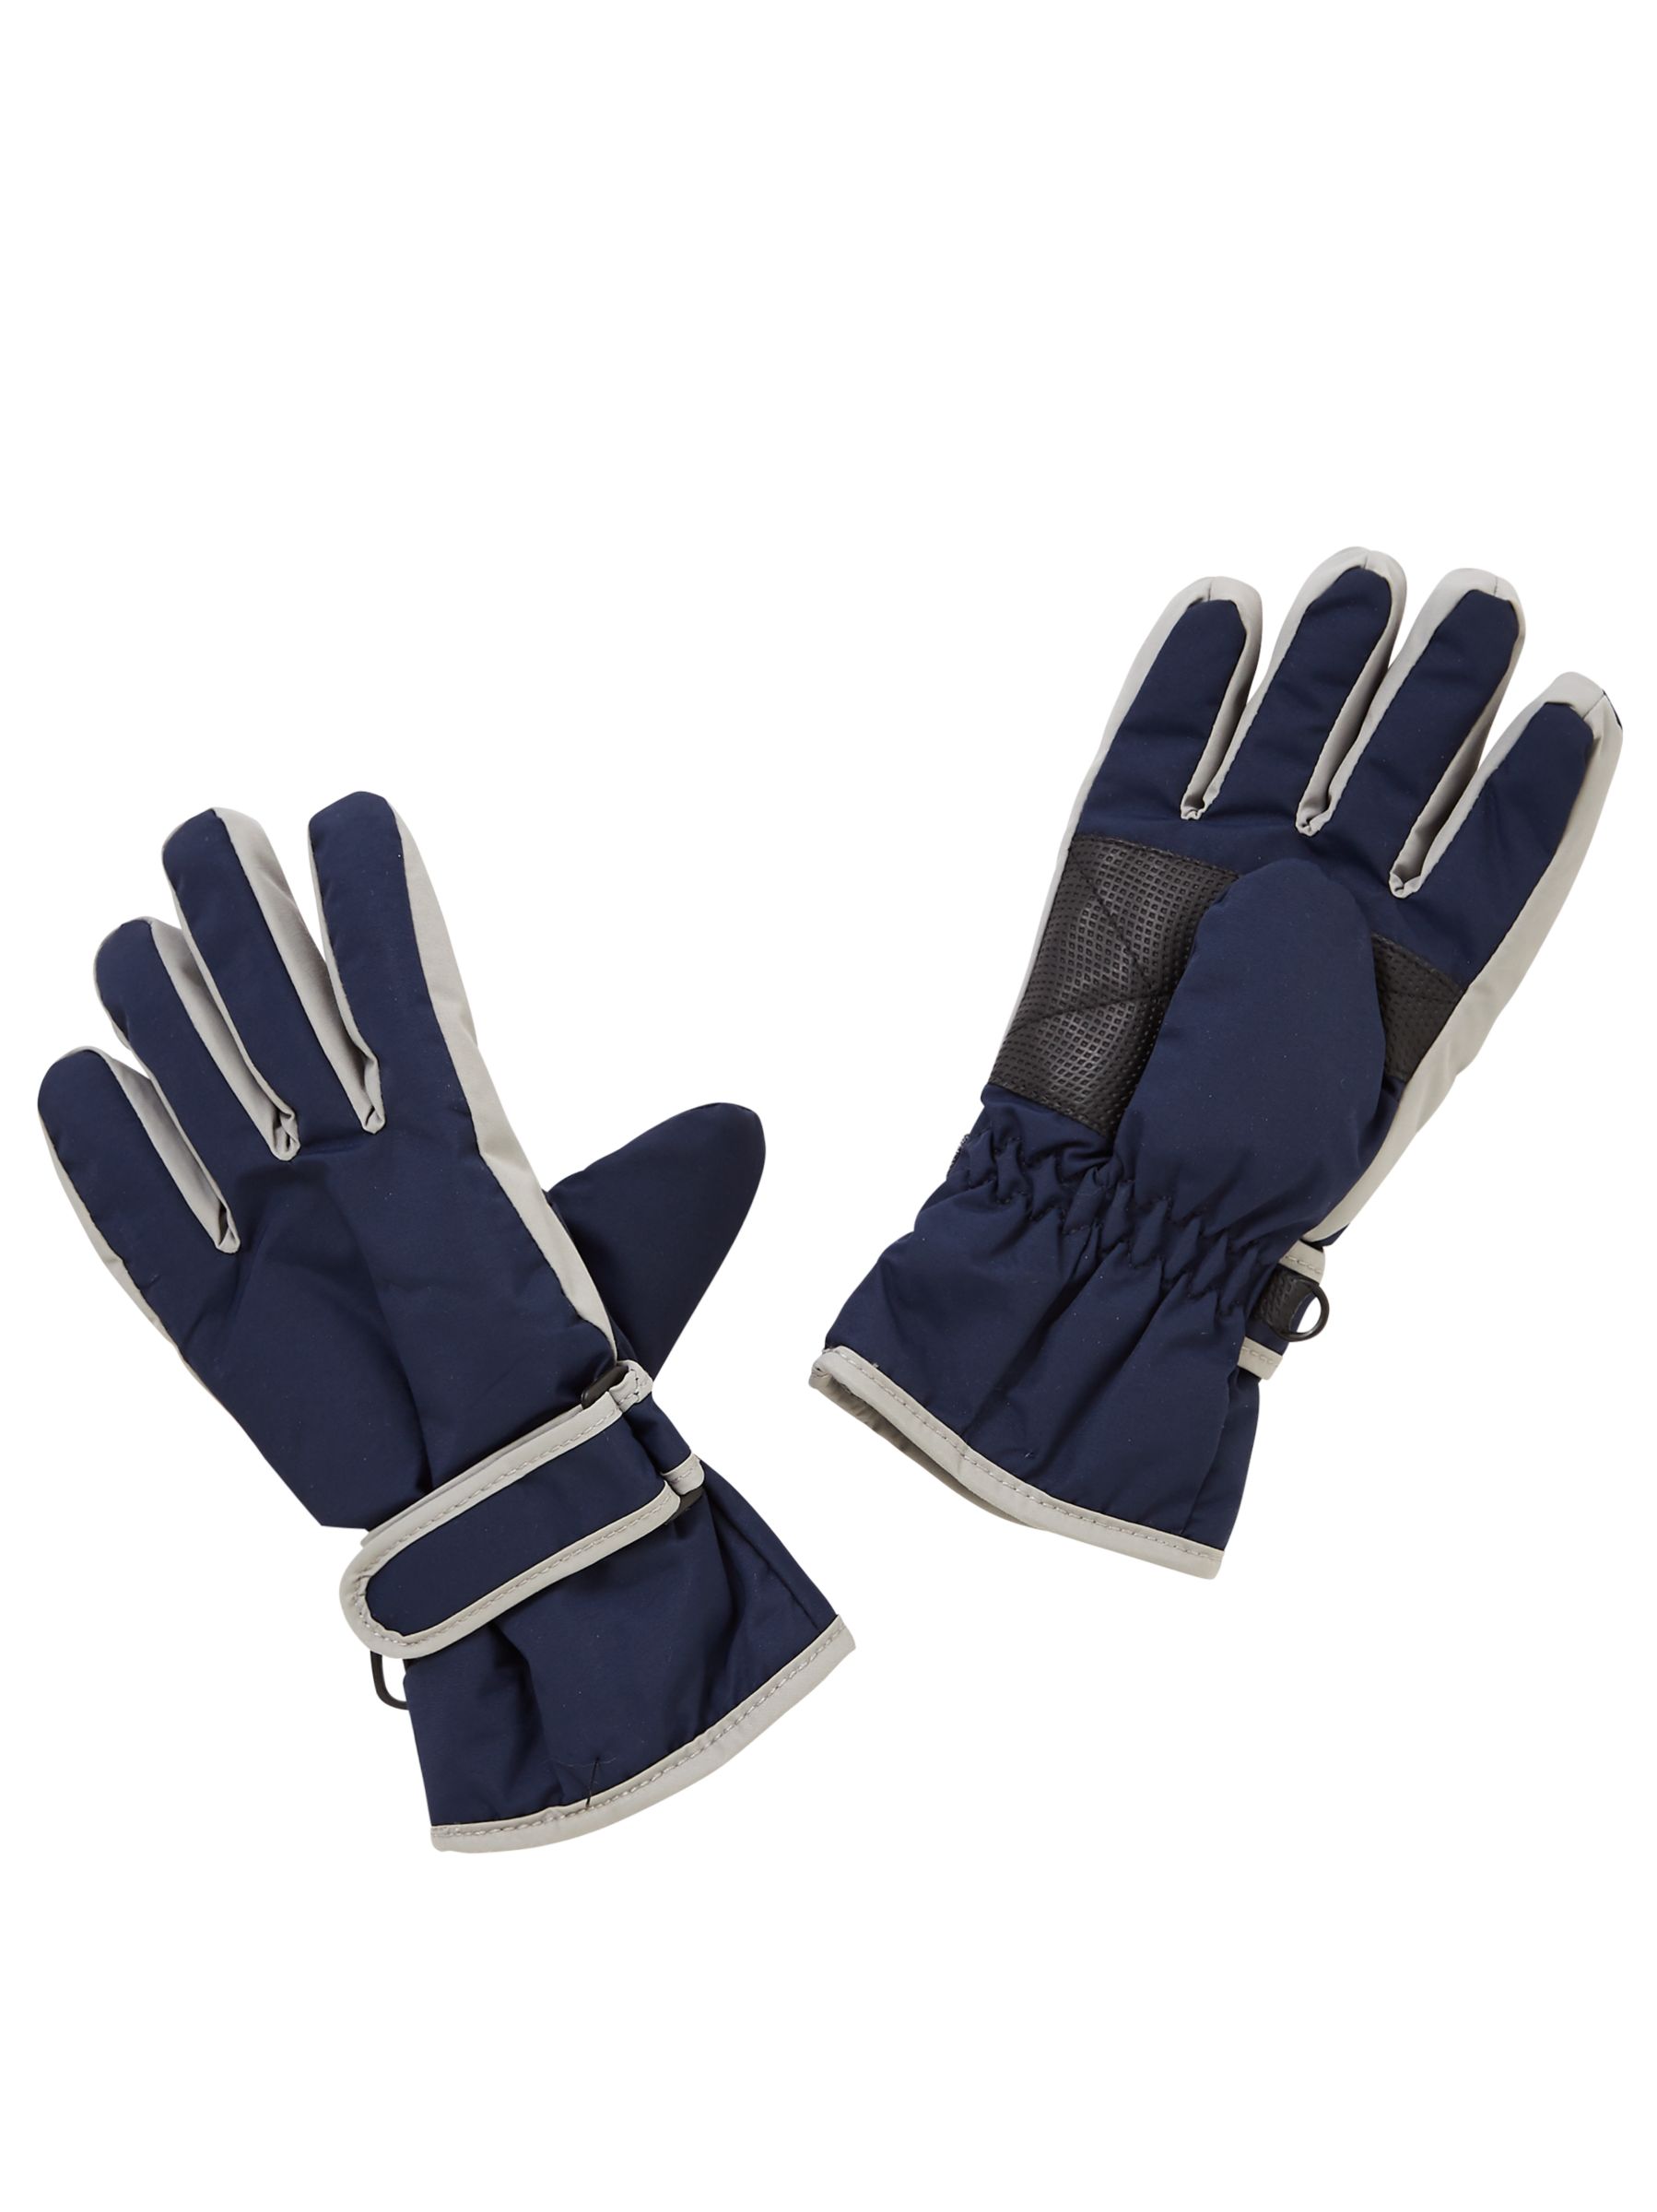 John Lewis Children's Ski Gloves